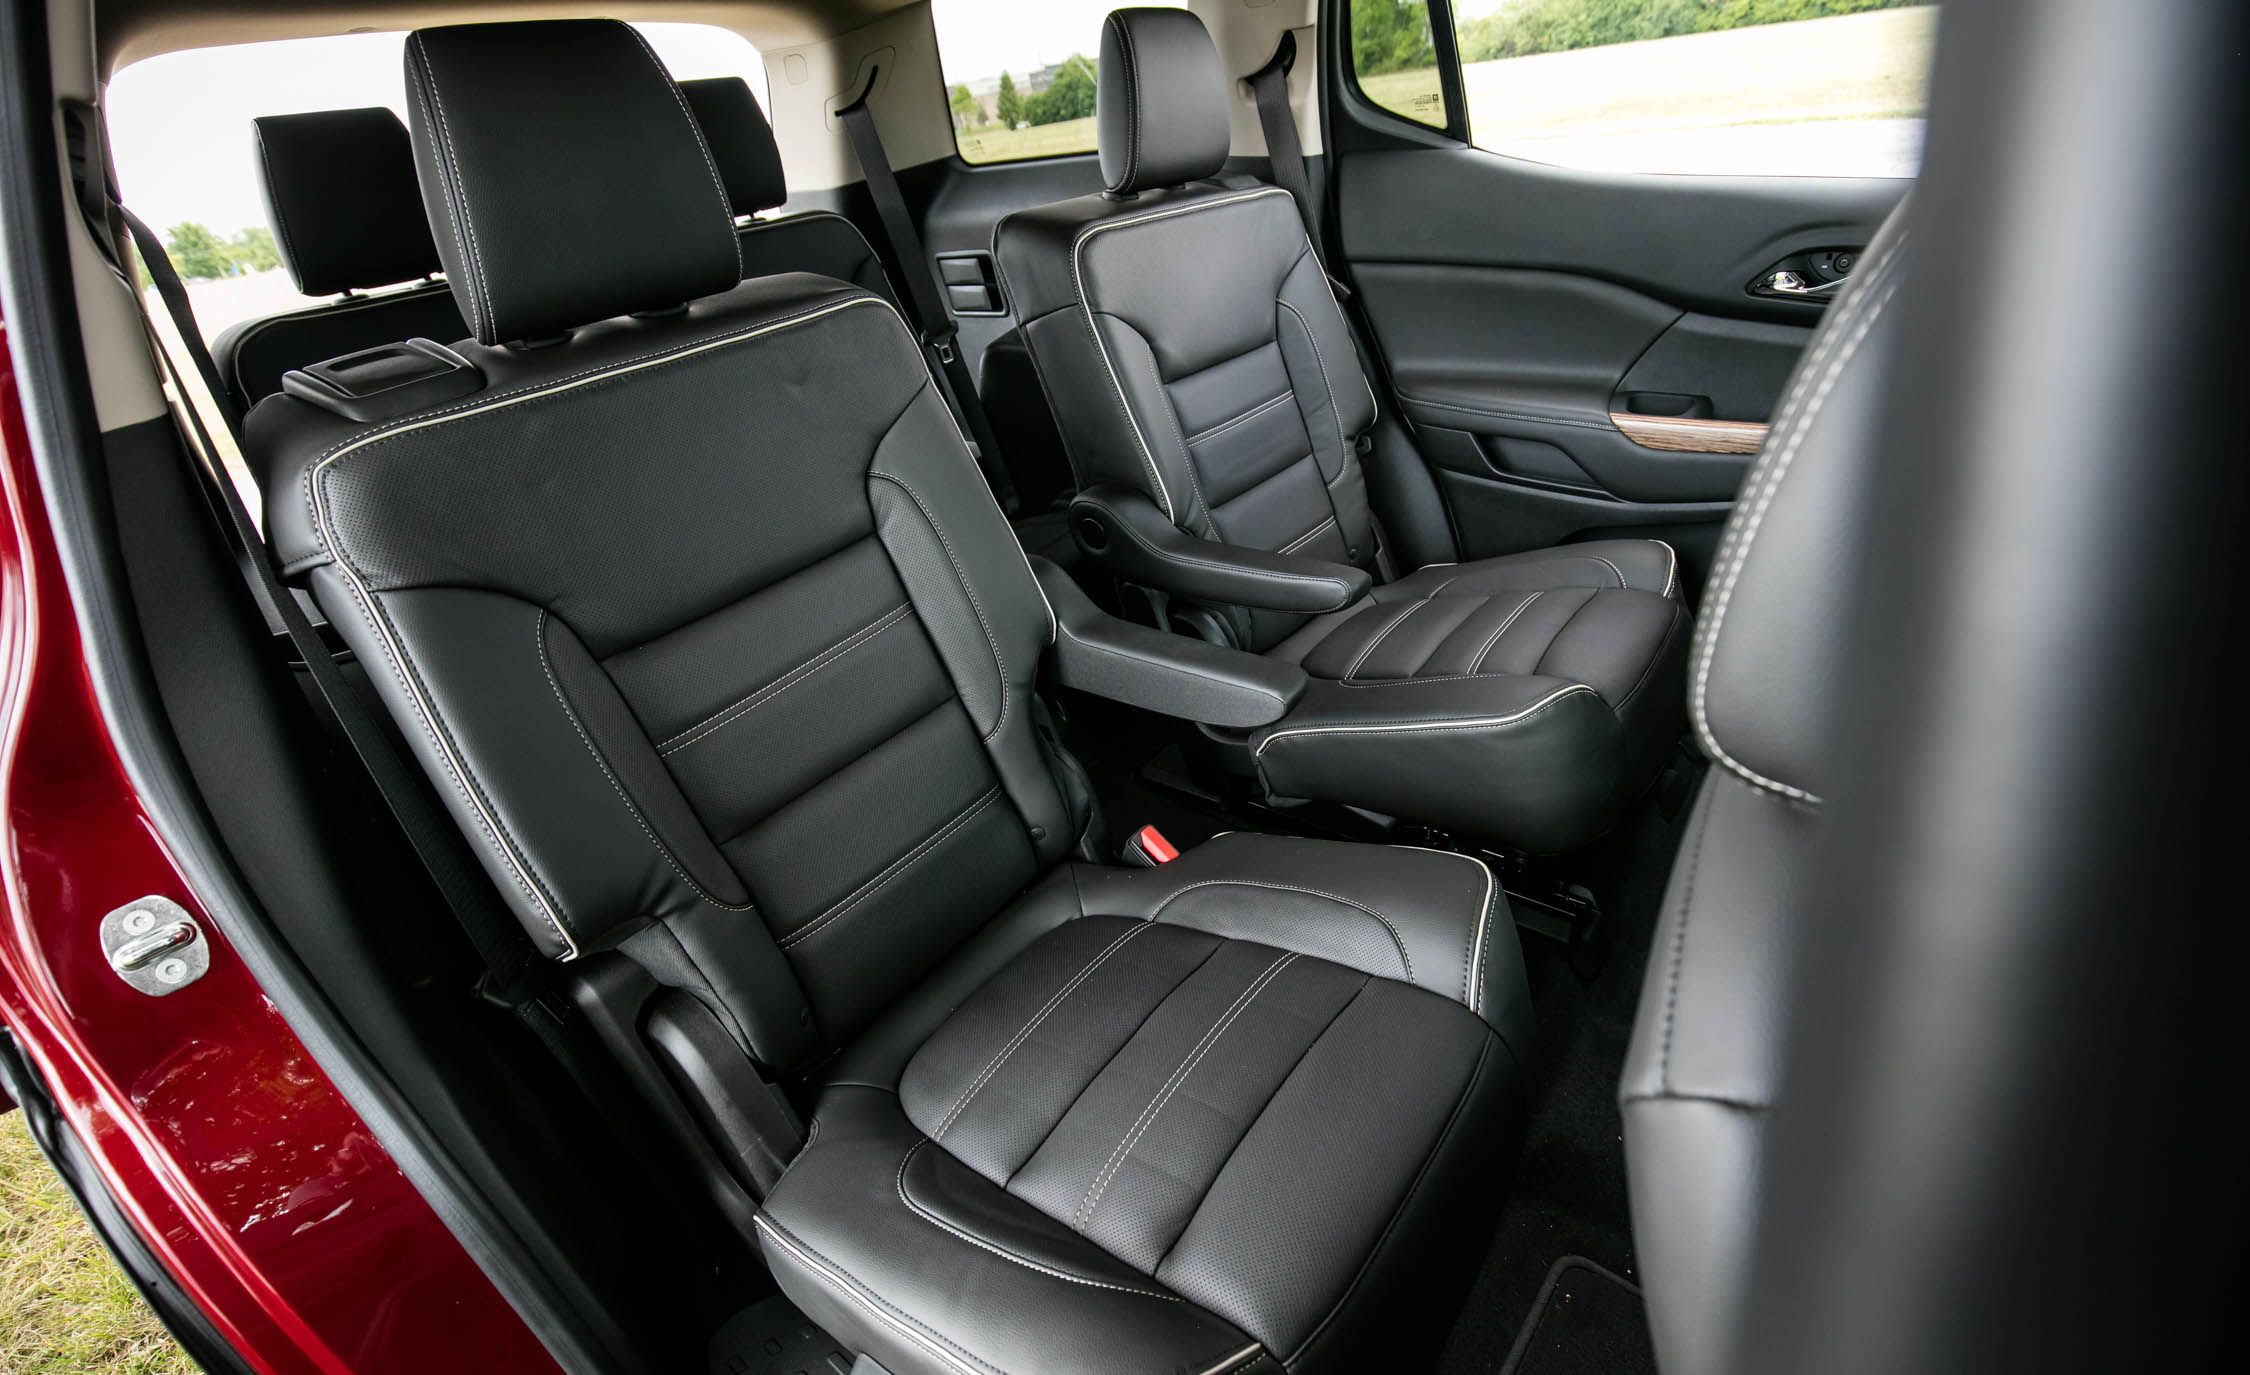 2017 GMC Acadia Denali AWD Interior Seats Rear 2nd Row (View 44 of 56)